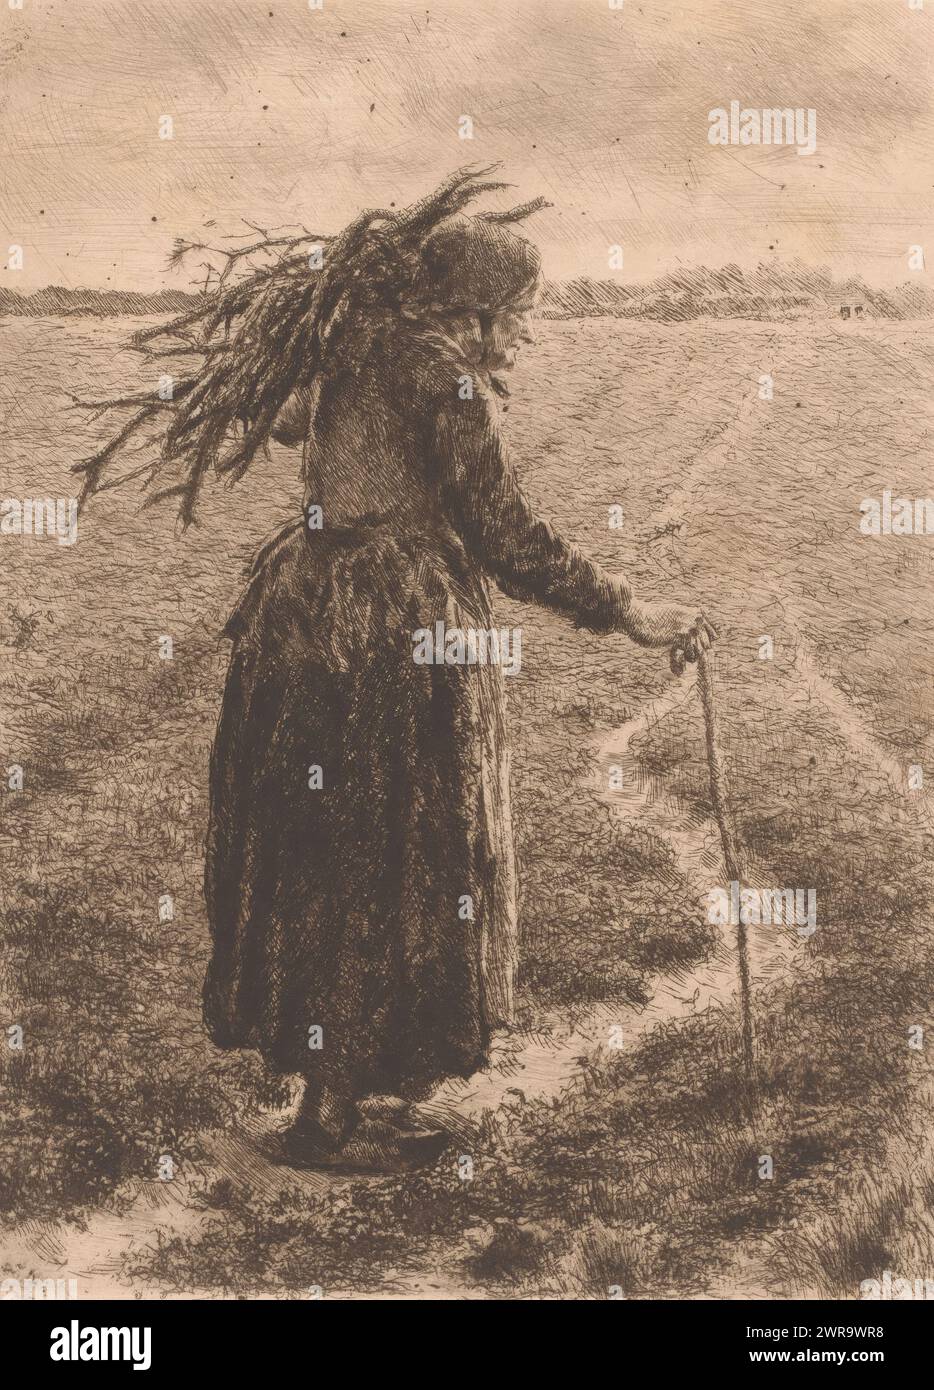 Vecchia donna con bastone da passeggio e rami sulla spalla, stampatrice: Edgard Farasyn, (firmato dall'artista), 1868 - 1910, carta, incisione, altezza 240 mm x larghezza 180 mm, stampa Foto Stock